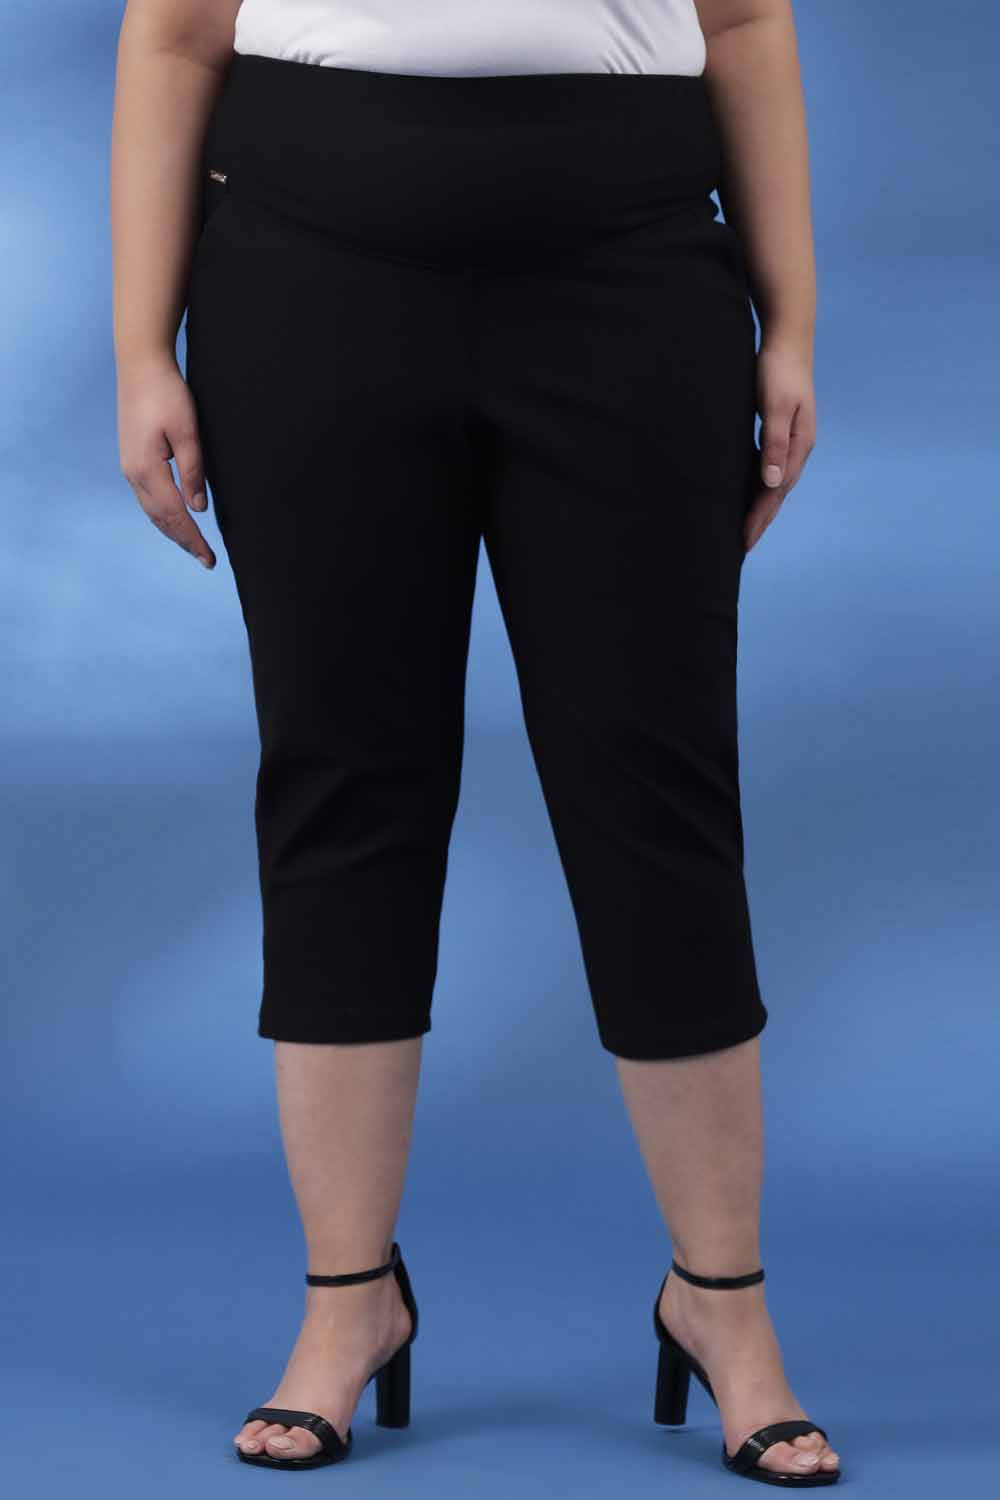 Plus Size Caprs For Women - Buy Plus Size Capri Pants